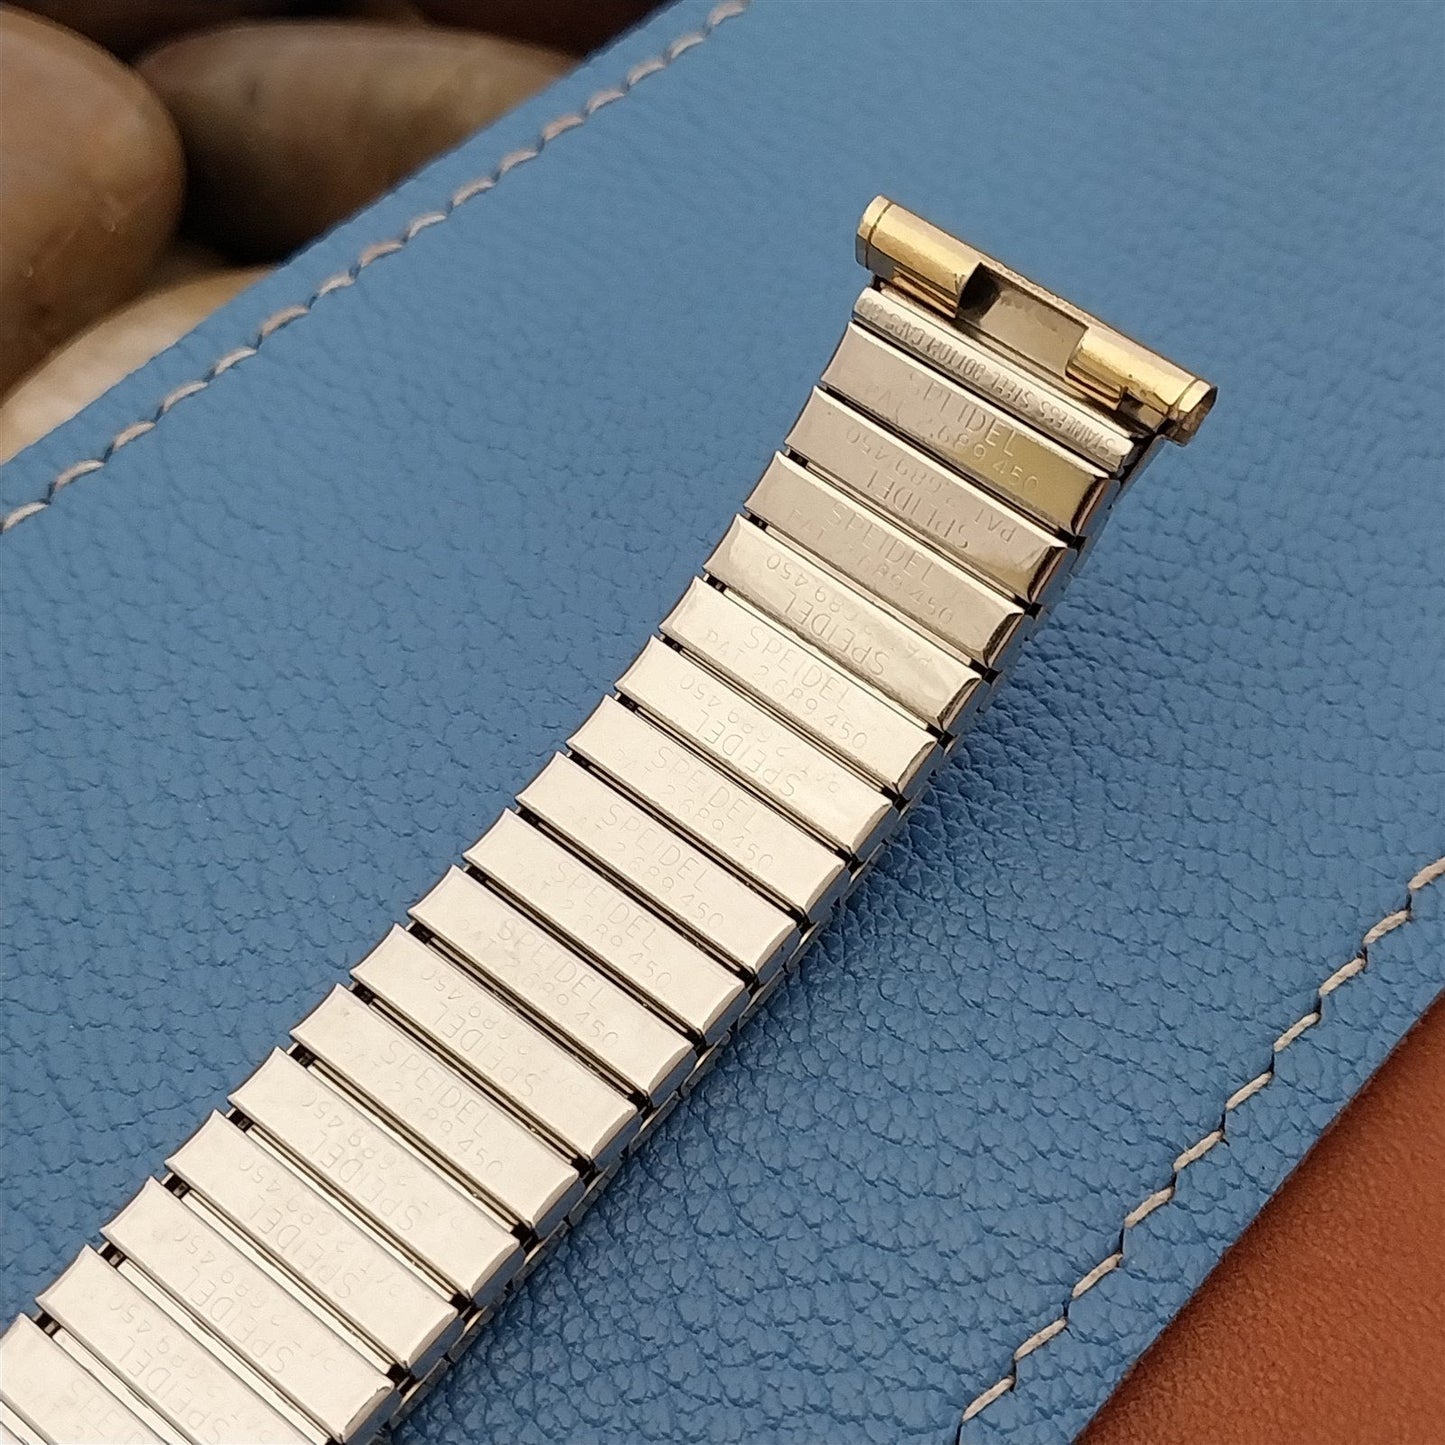 19mm 18mm Gold-Filled Expansion Speidel Gladiator Unused 1968 Vintage Watch Band